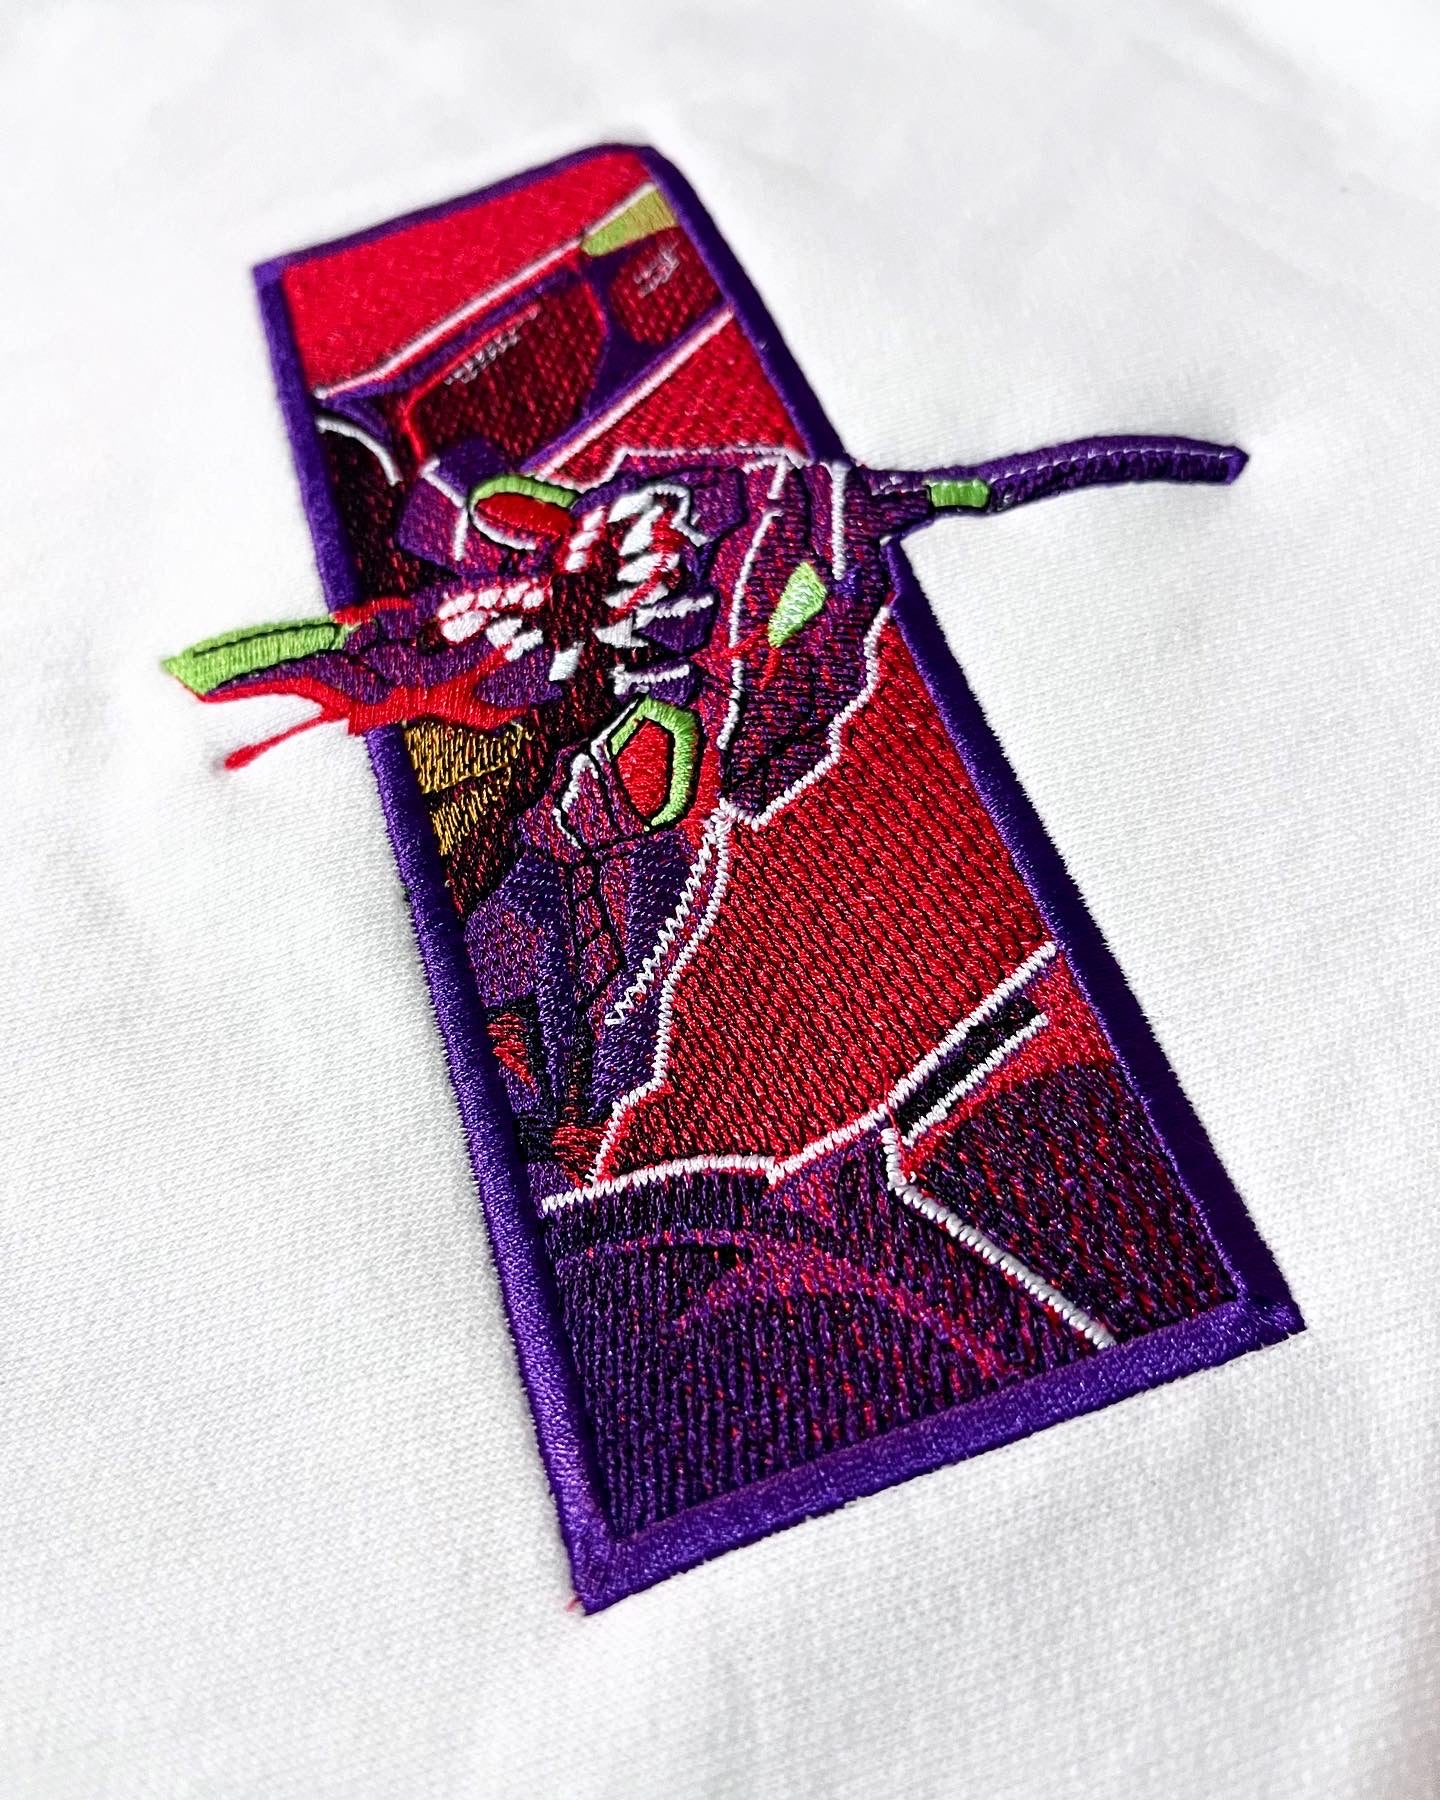 Eva 01 Embroidery (Evangelion)